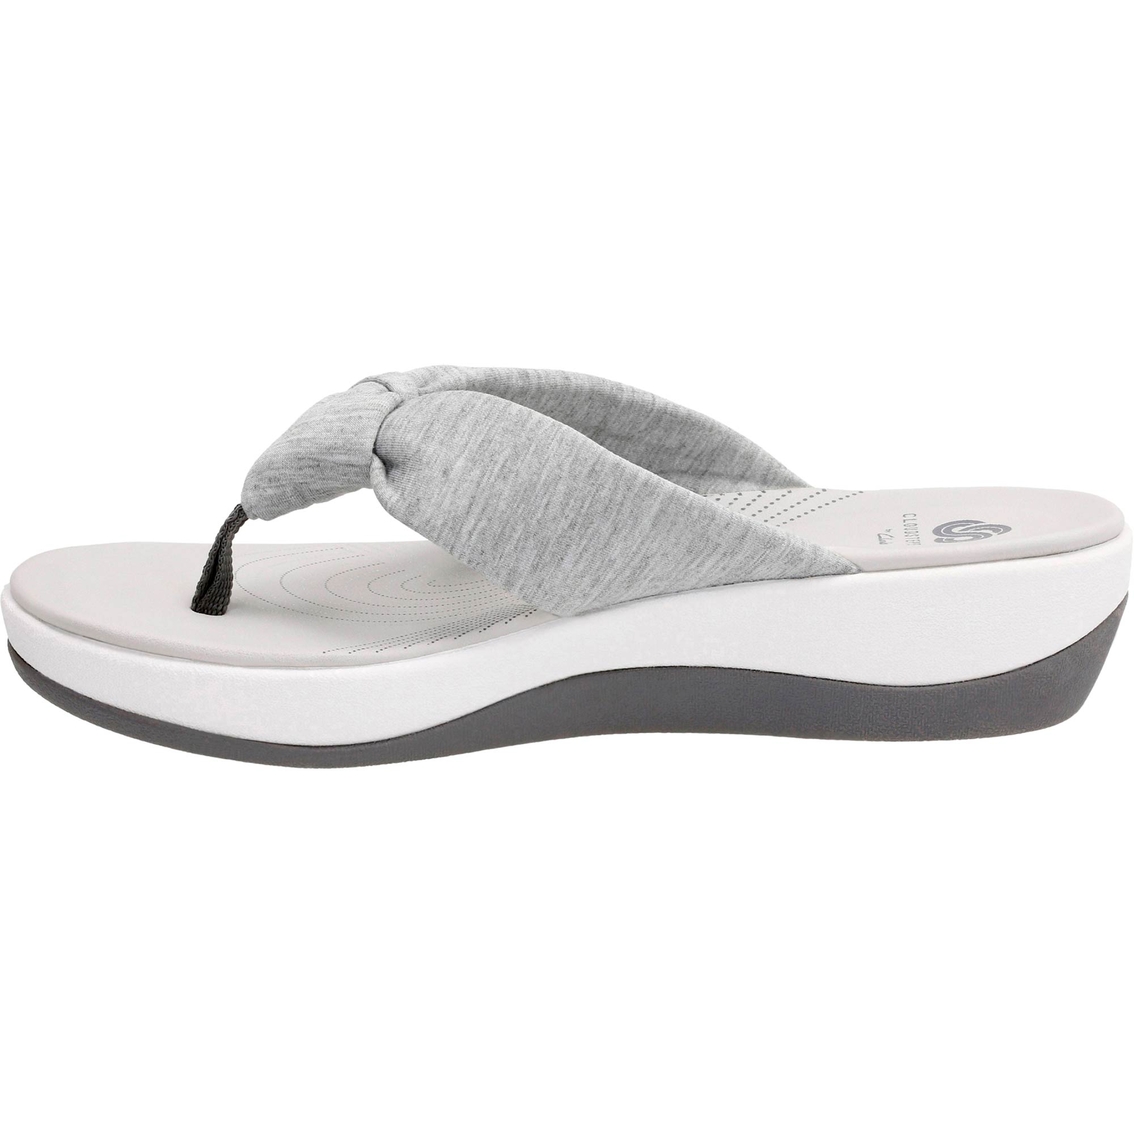 Clarks Women's Arla Glison Cloudstepper Flip Flops | Sandals | Shoes ...